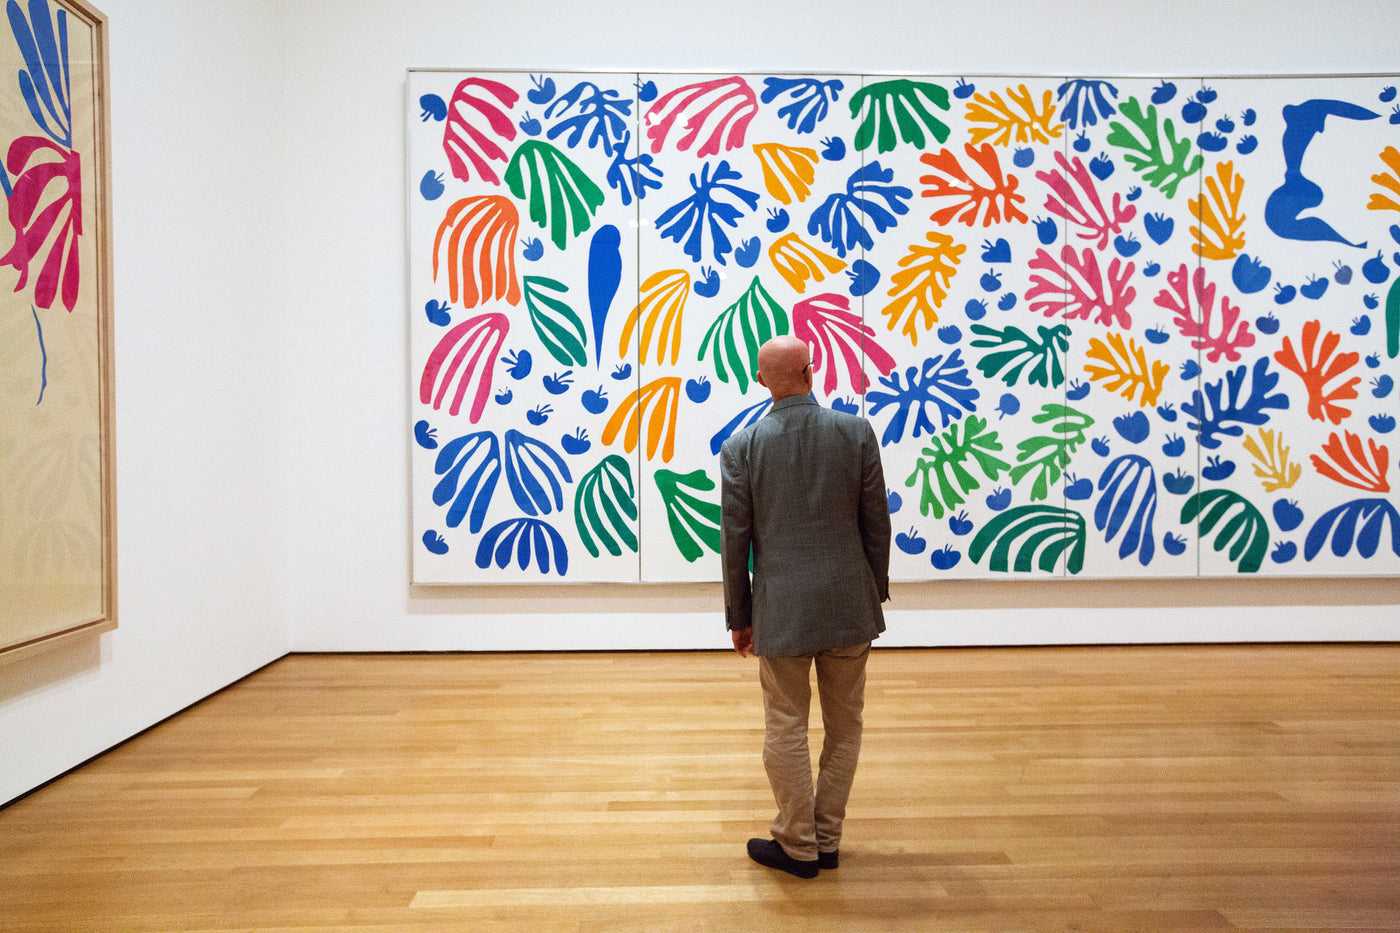 Henri Matisse (after) The Last Works of Henri Matisse (1958)